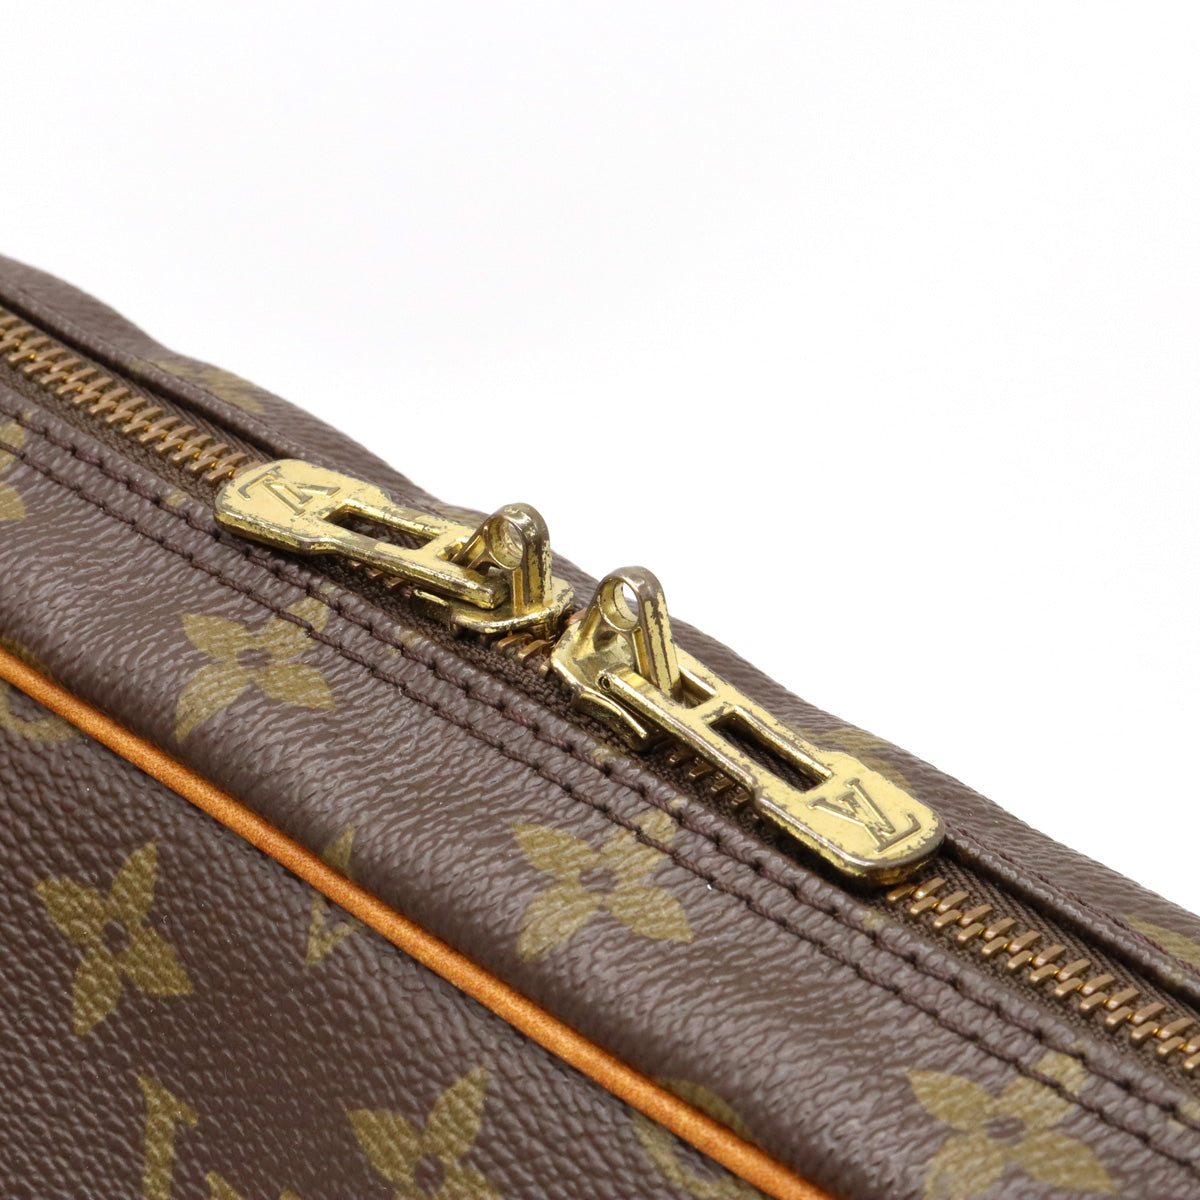 Louis Vuitton Porte Document Voyage Business Bag – Timeless Vintage Company